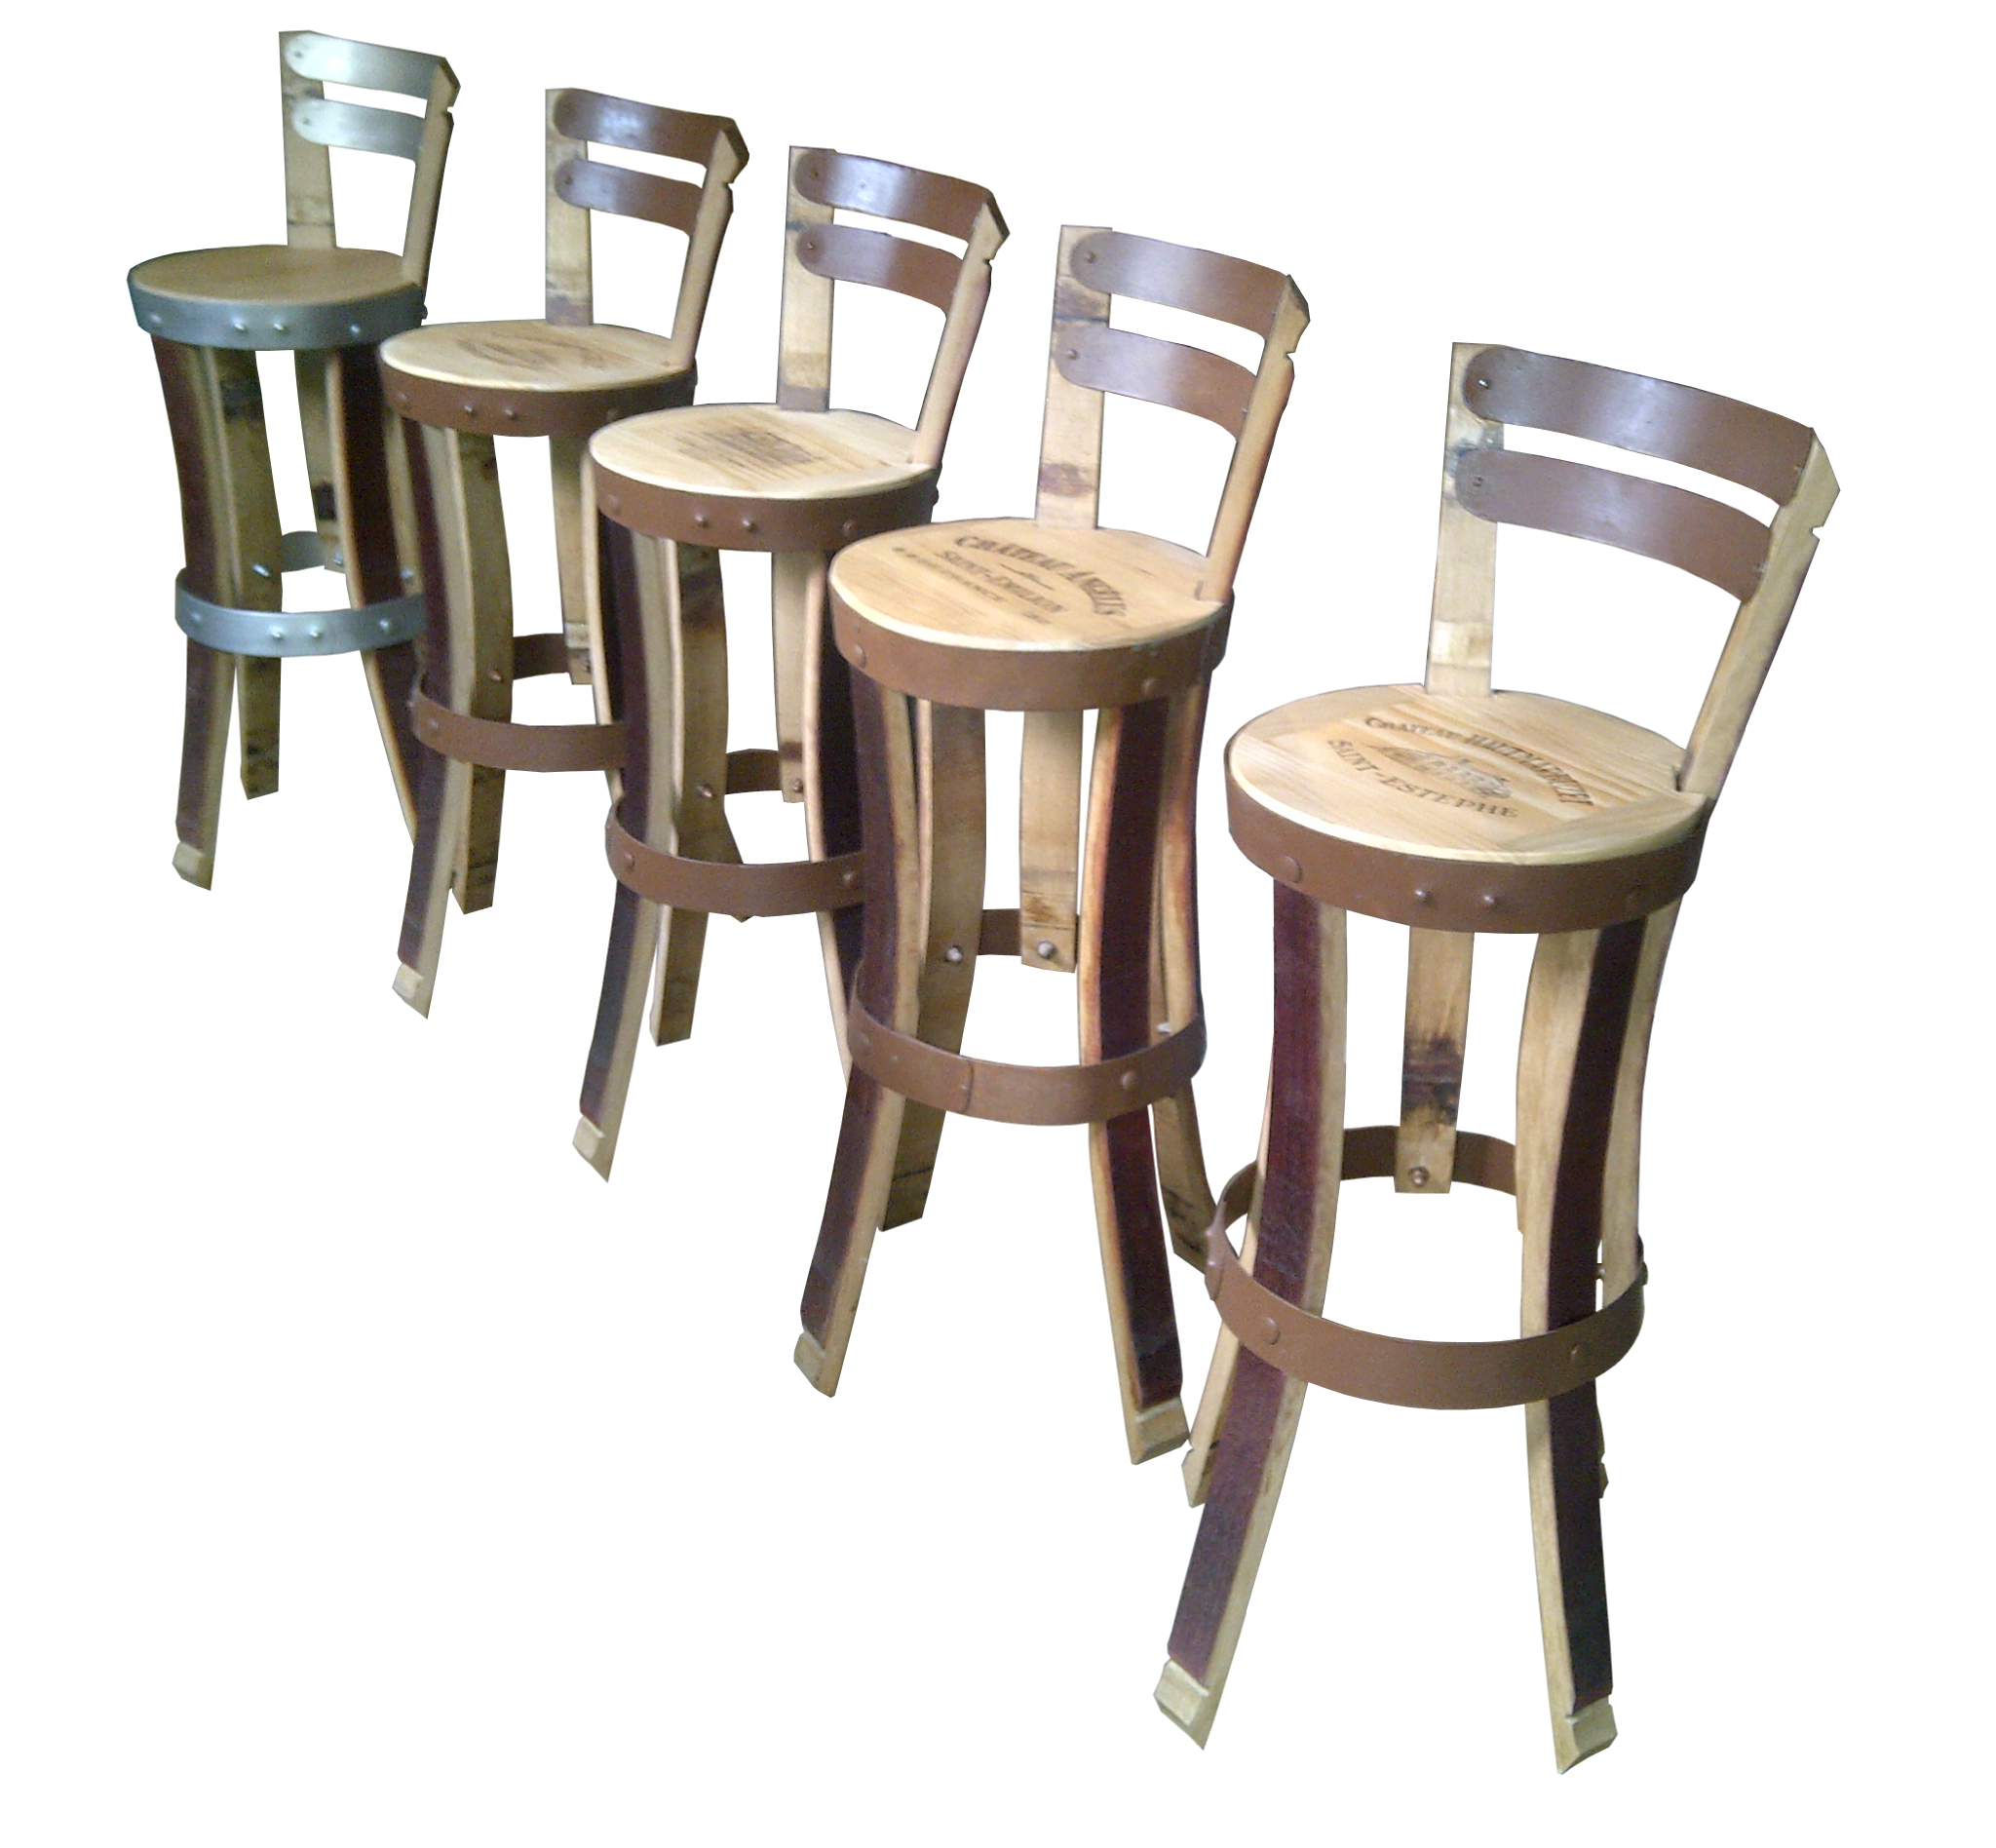 chaise haute cuisine en bois